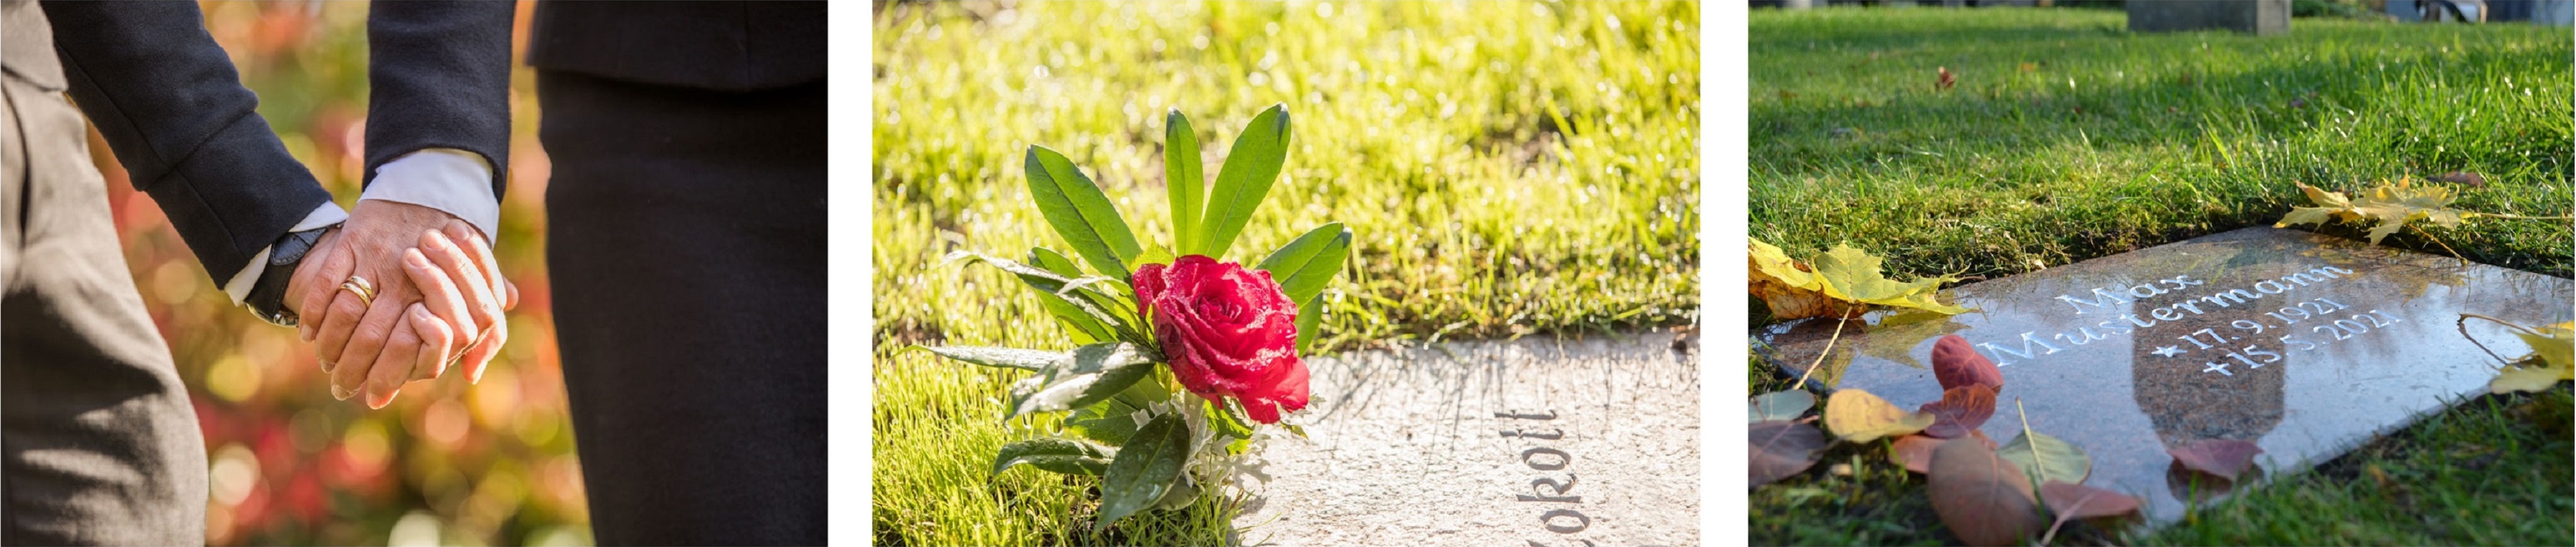 Grabsteine Vertrauenswürdig Friedhof Hand in Hand Rose Grabplatte Urnengrabstein Grabmal